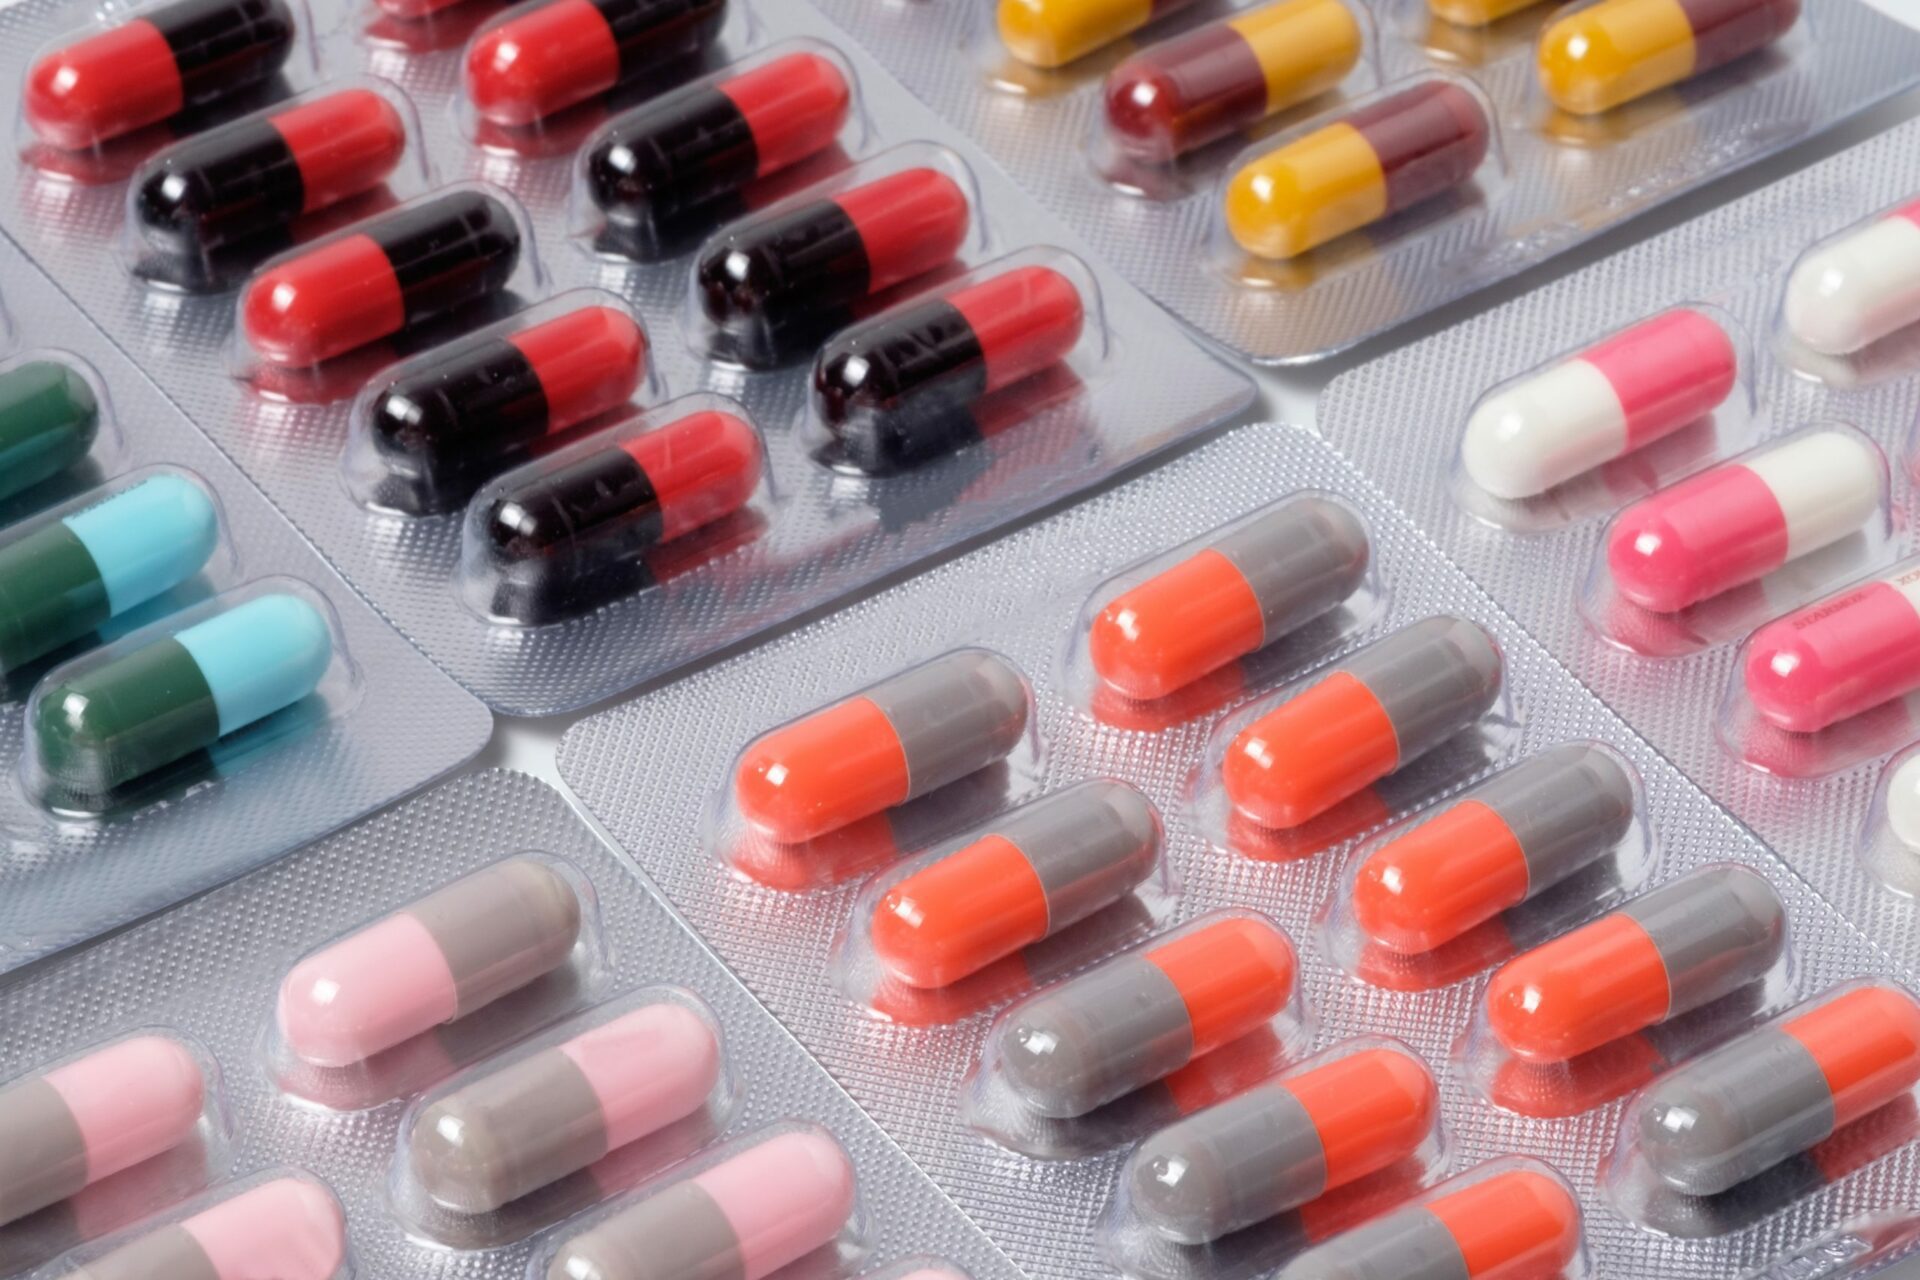 Jos et ota koko lääkärisi määräämää antibioottikuuria, se voi lisätä antibioottiresistenssiä.